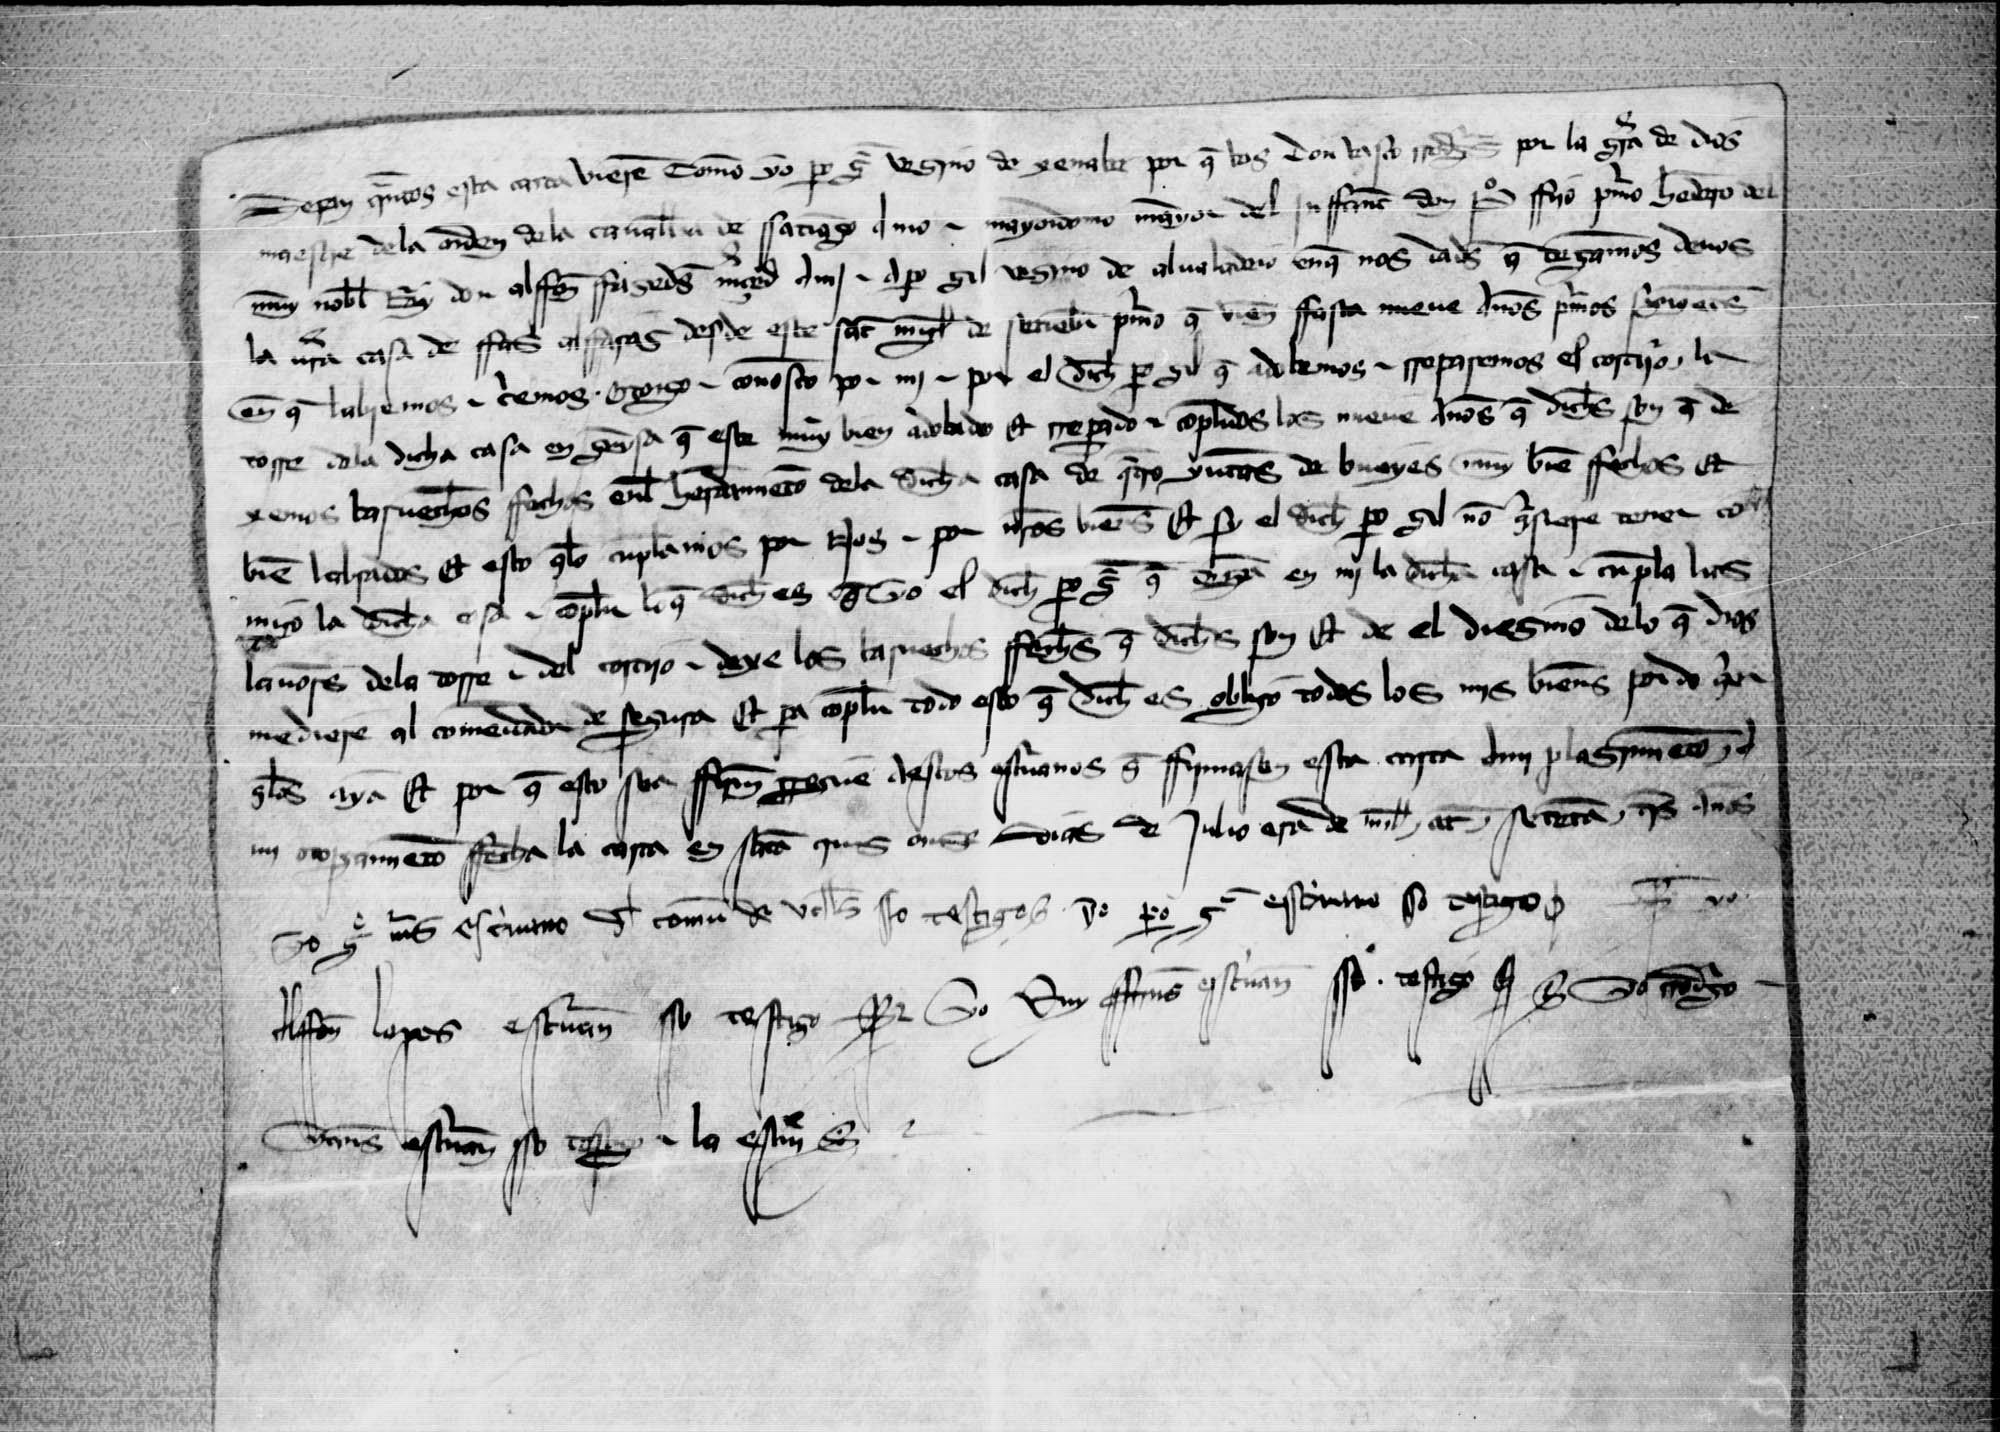 Carta de Pedro Gómez, vecino de Génave, a B. Rodríguez, maestre de la orden de la caballería de Santiago, sobre la concesión de una casa a Pedro Gil, vecino de Albaladejo, de una casa.